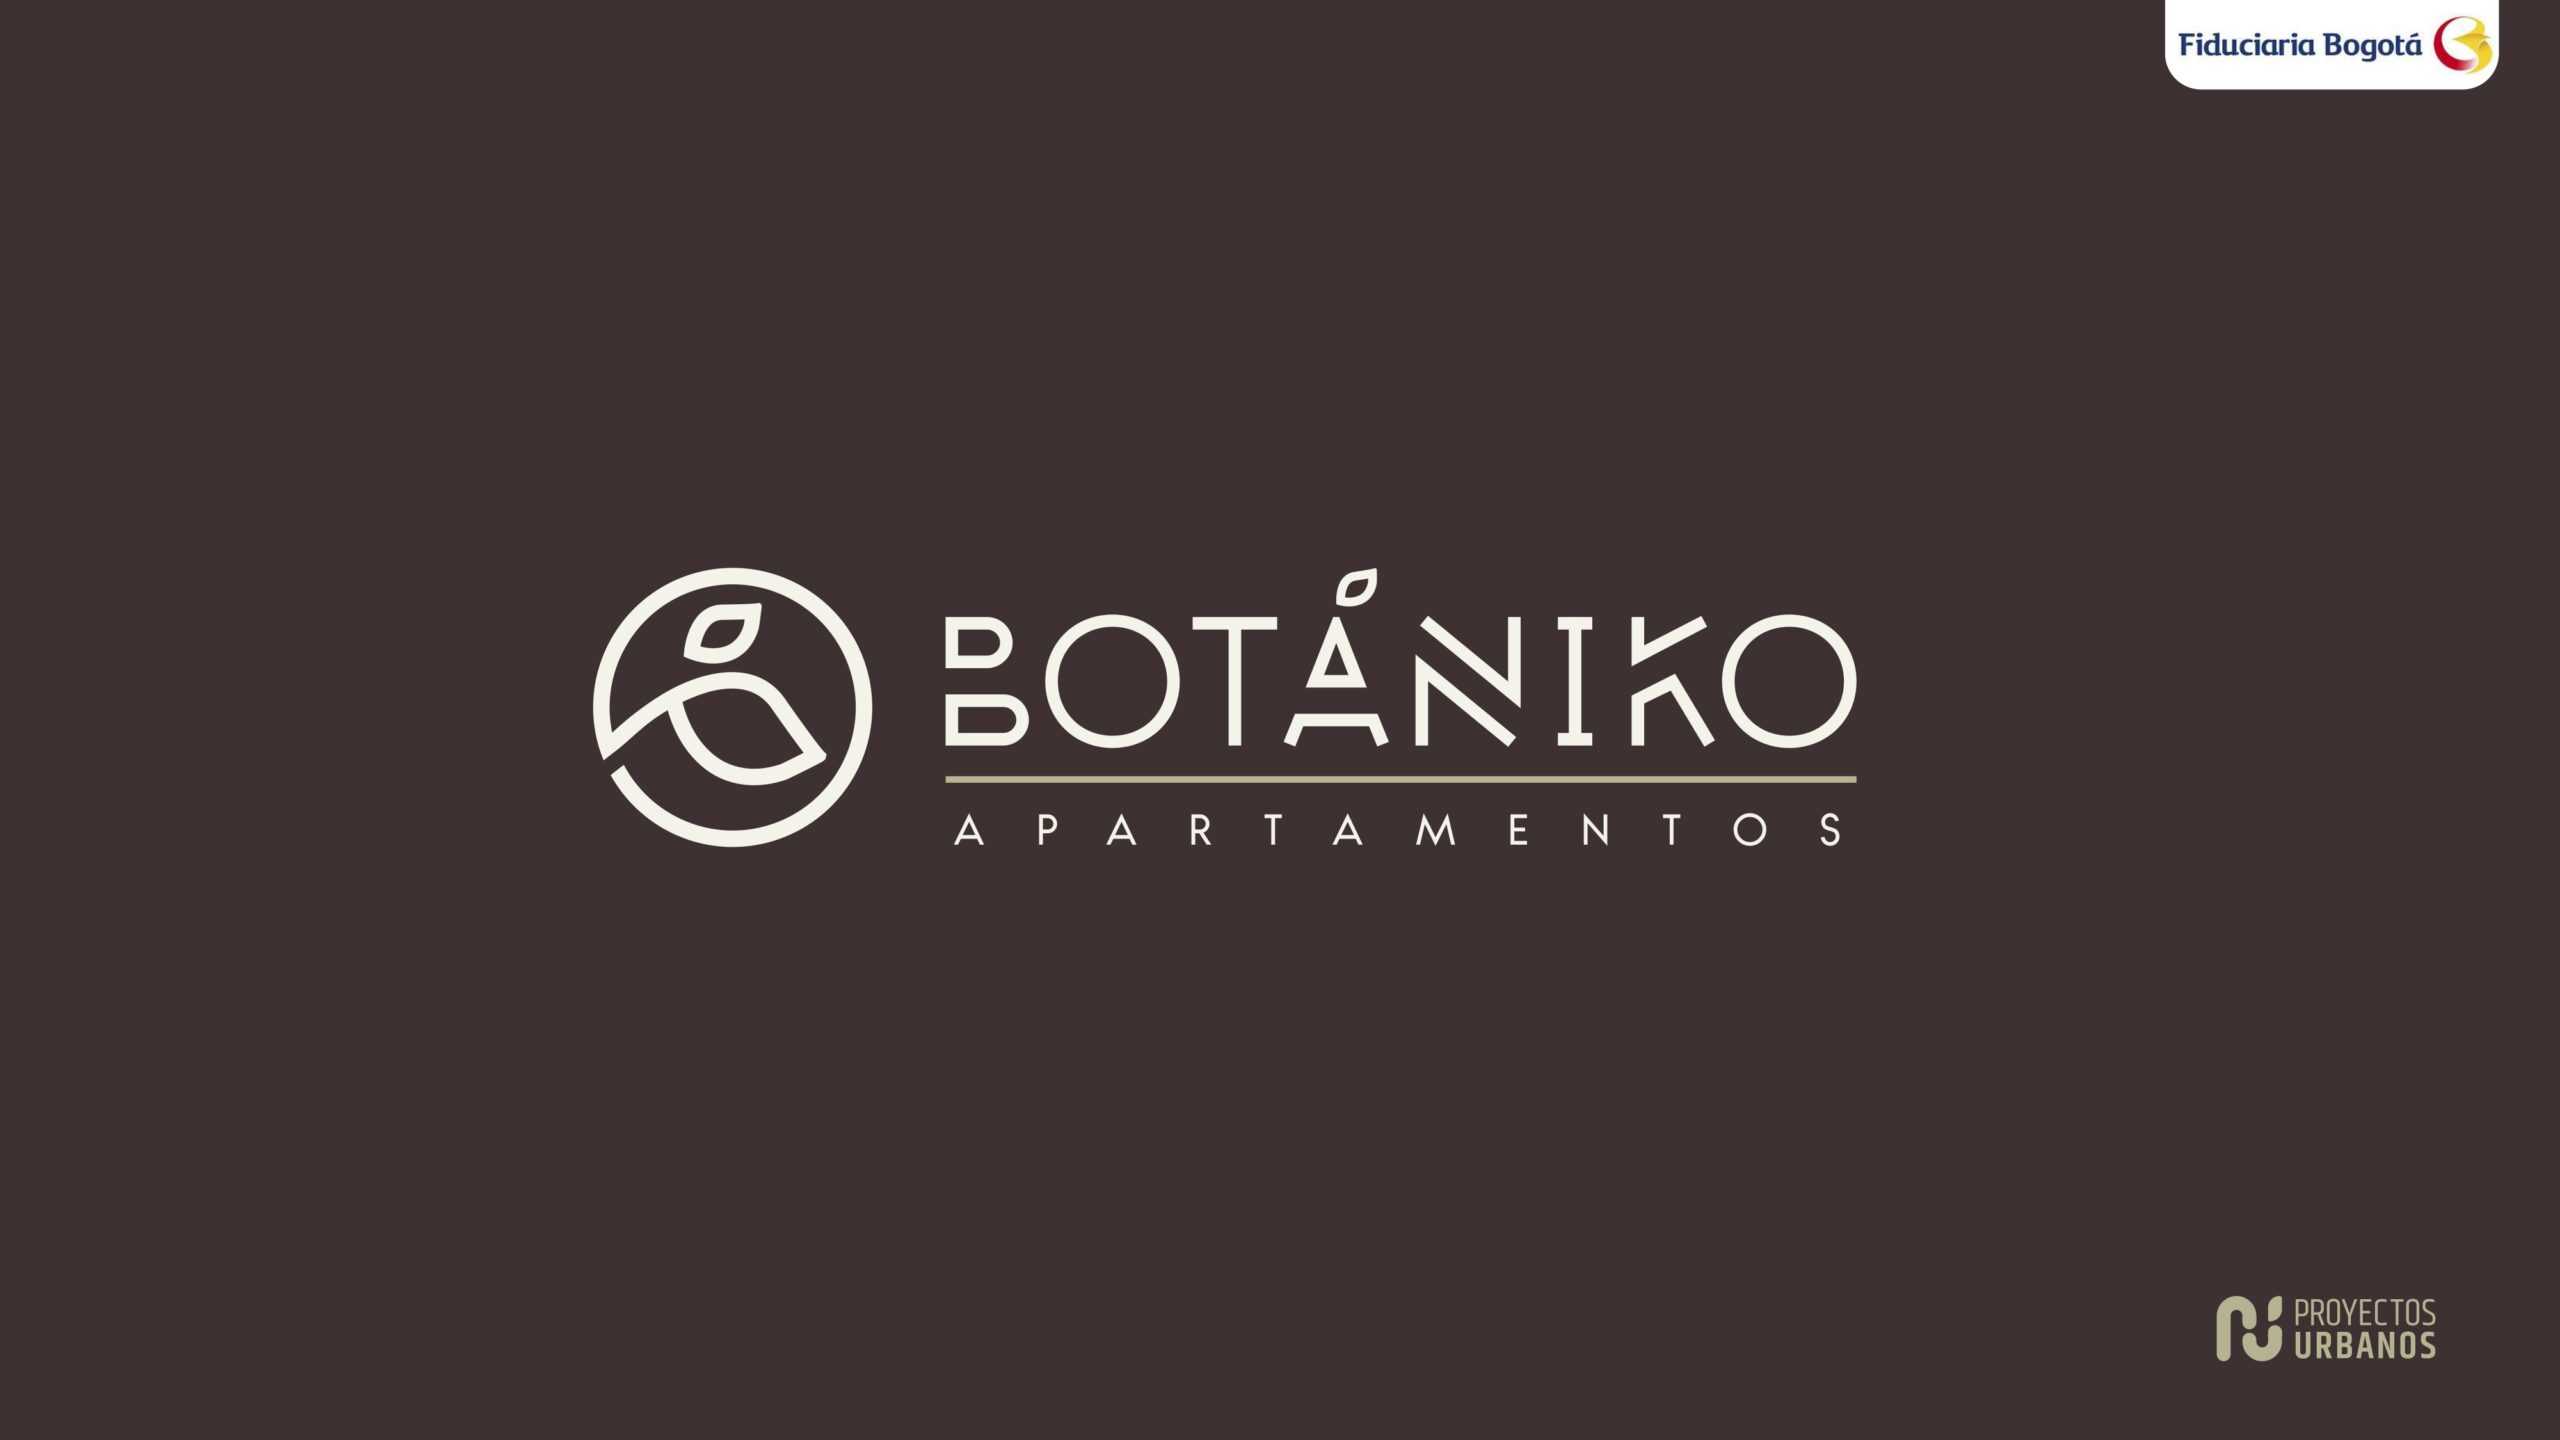 BOTANIKO (1)_page-0001